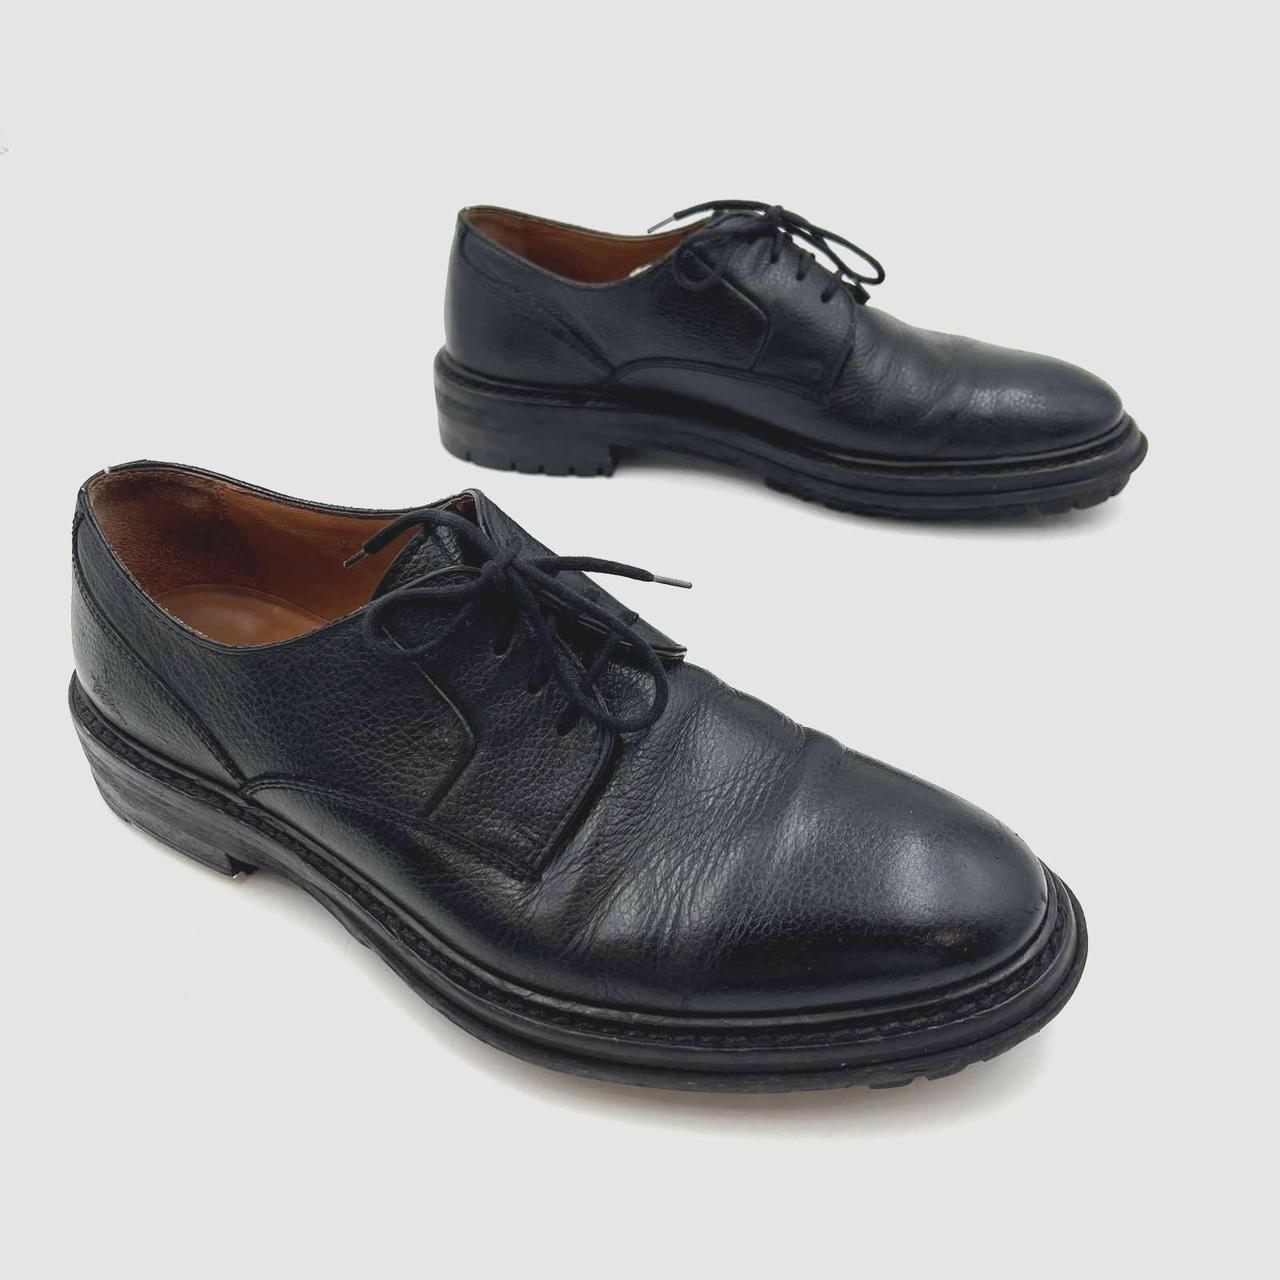 Lanvin lace-up leather shoes - Black